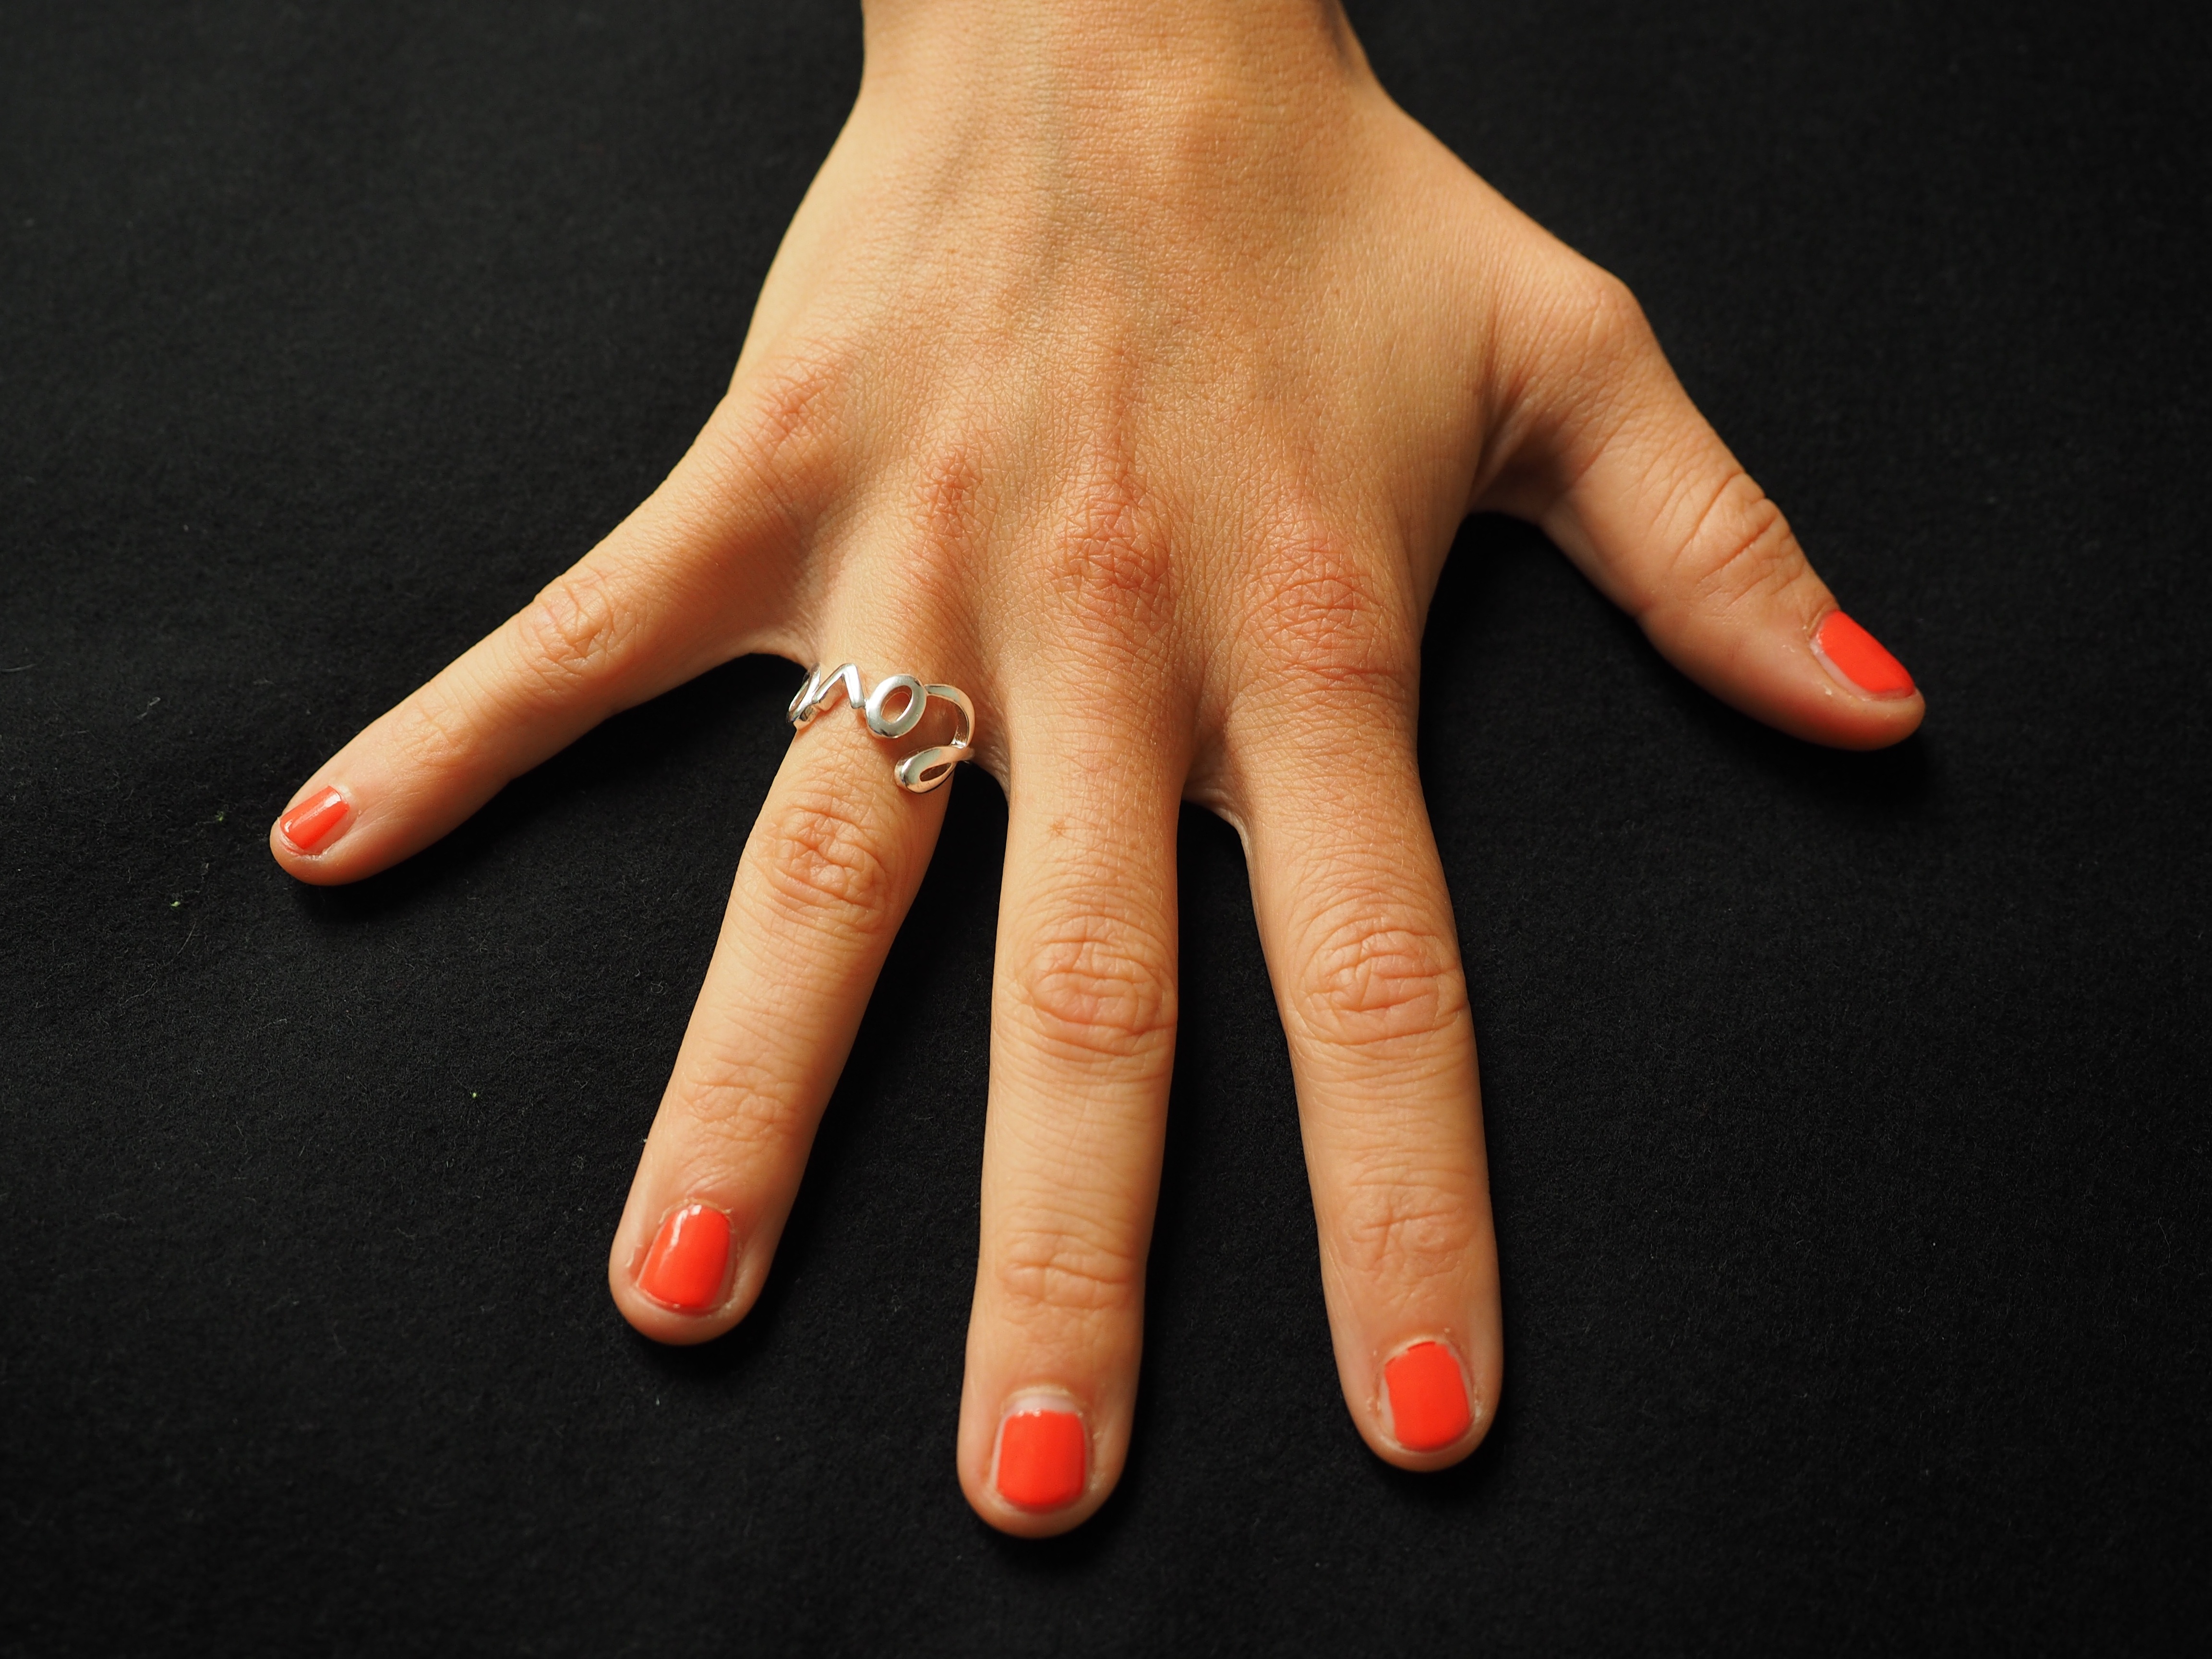 Безымянный палец с кольцом